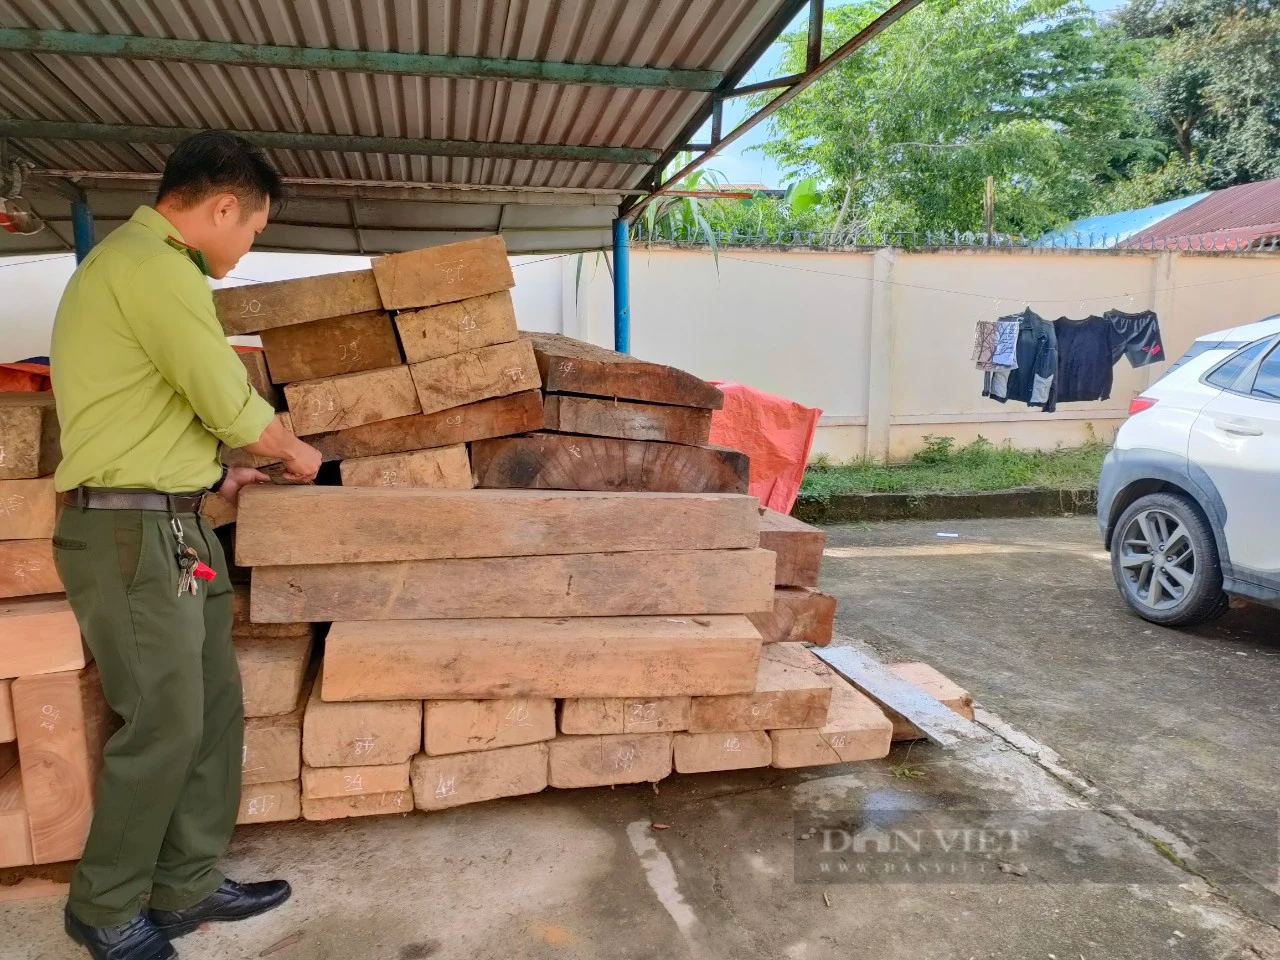 Phạt chủ gỗ cất giấu hơn 5,6m3 gỗ trong đất của Trưởng phòng nội vụ huyện ở Quảng Nam - Ảnh 2.